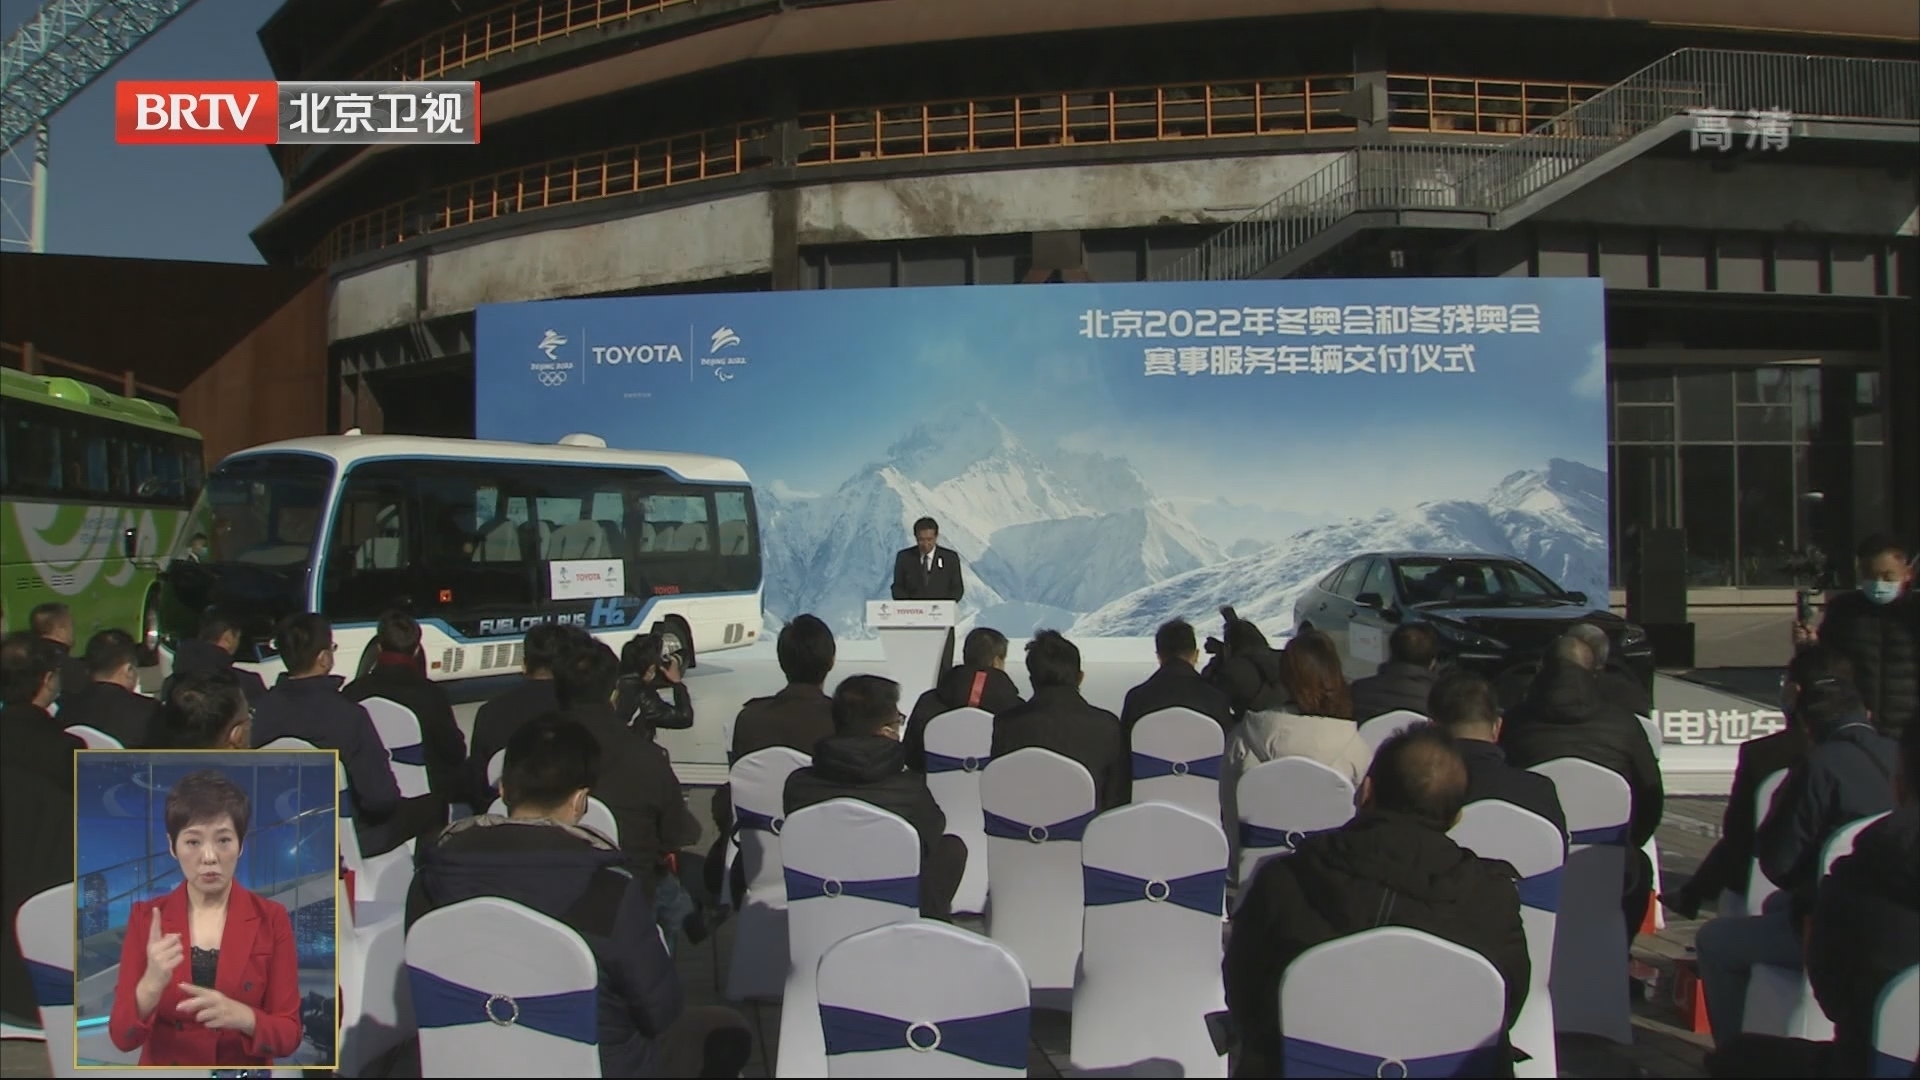 北京2022年冬奥会和冬残奥会赛事服务车辆交付